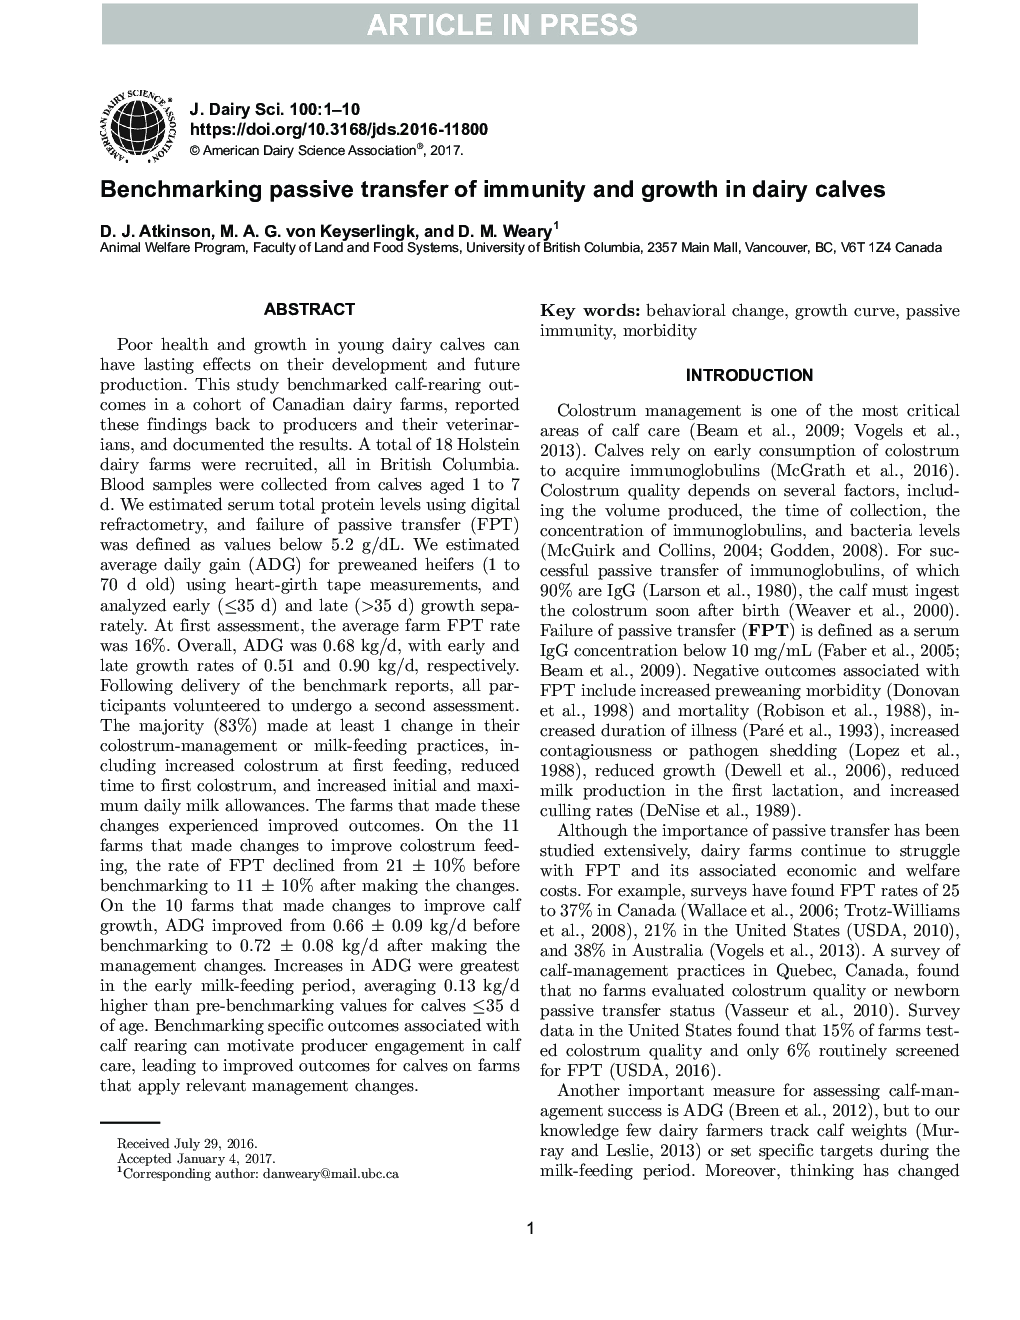 ارزیابی انتقال غیرفعال مصونیت و رشد گوساله های شیری 